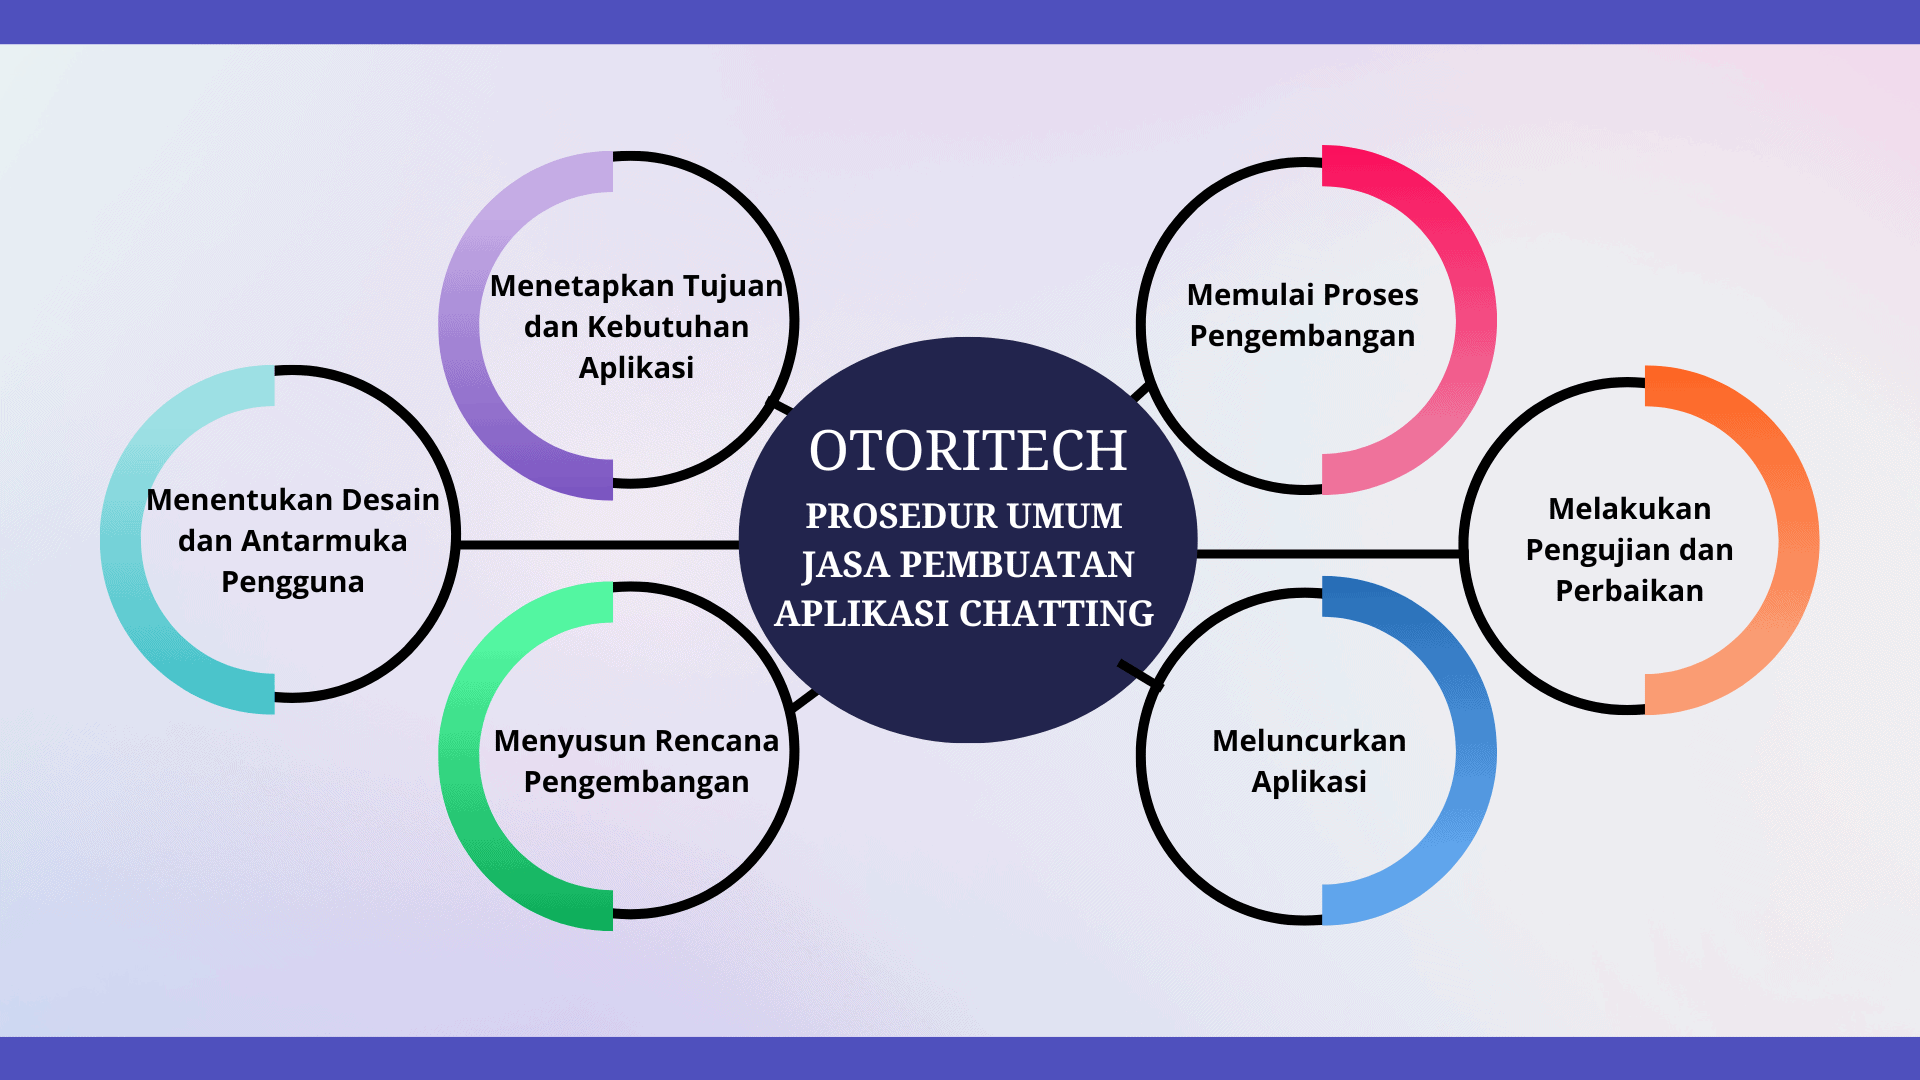 Otoritech, prosedur umum jasa pembuatan aplikasi chatting